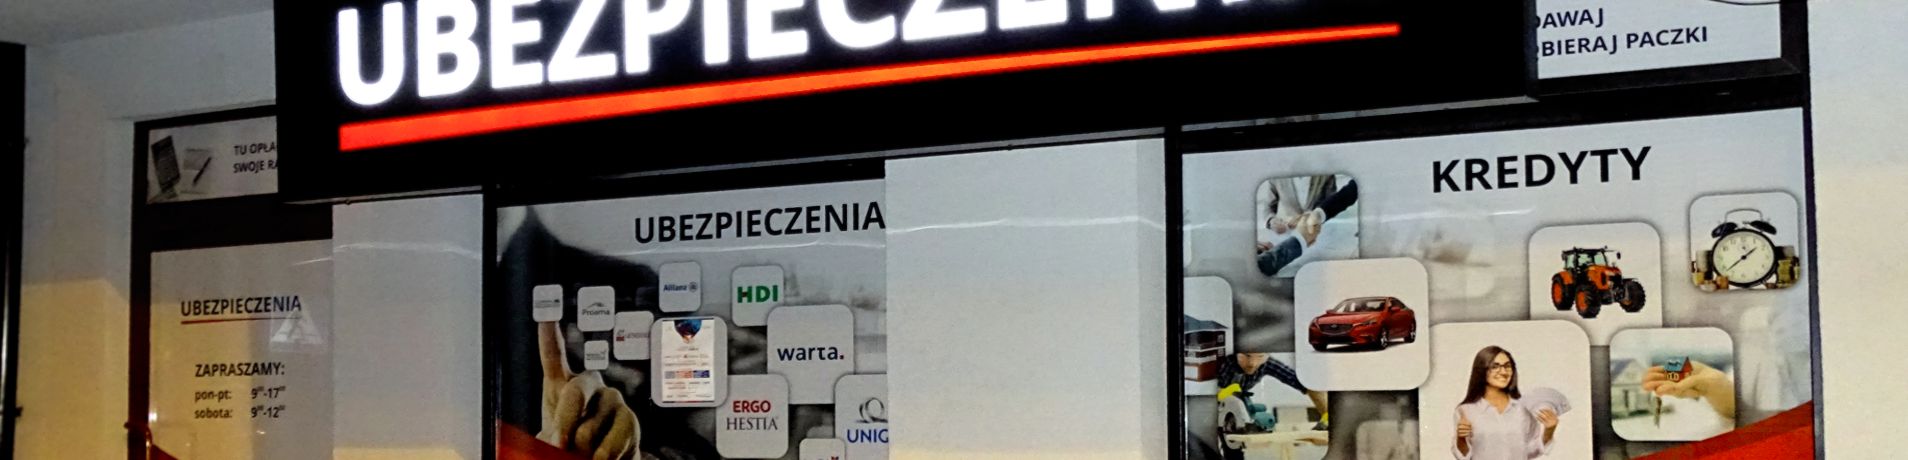 reklama zewnętrzna nowego punktu usługowego w mińsku mazowieckim